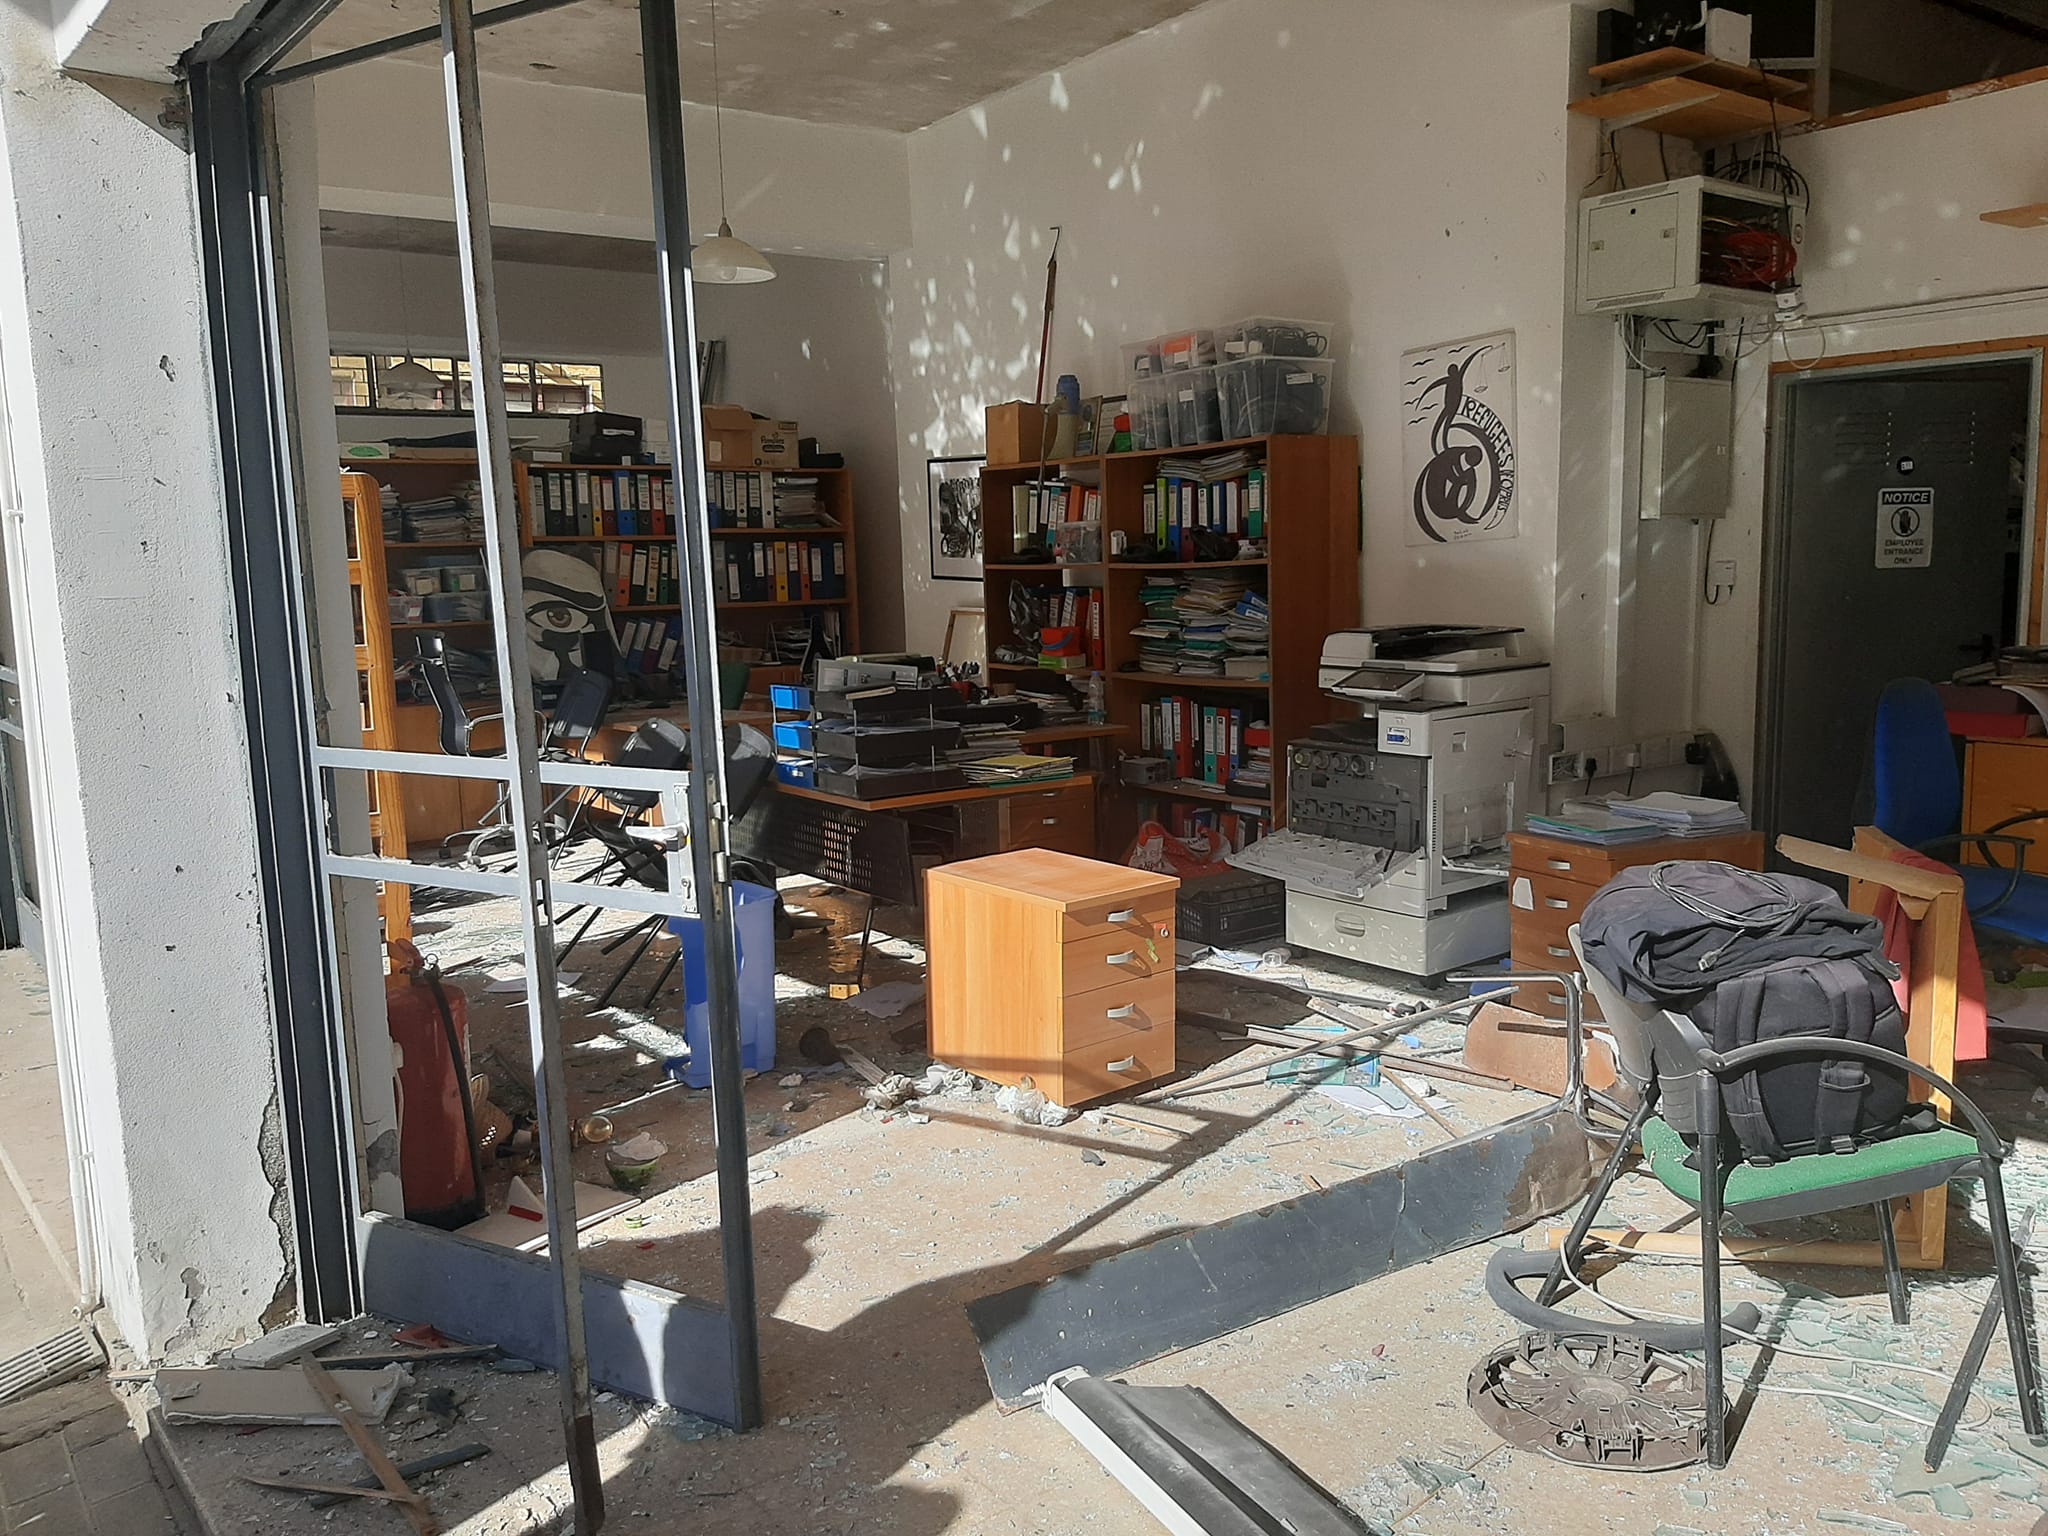 Κύπρος: Έκρηξη βόμβας στα γραφεία αντιρατσιστικής MKO στη Λευκωσία - «Ηθικός αυτουργός η κυβέρνηση»